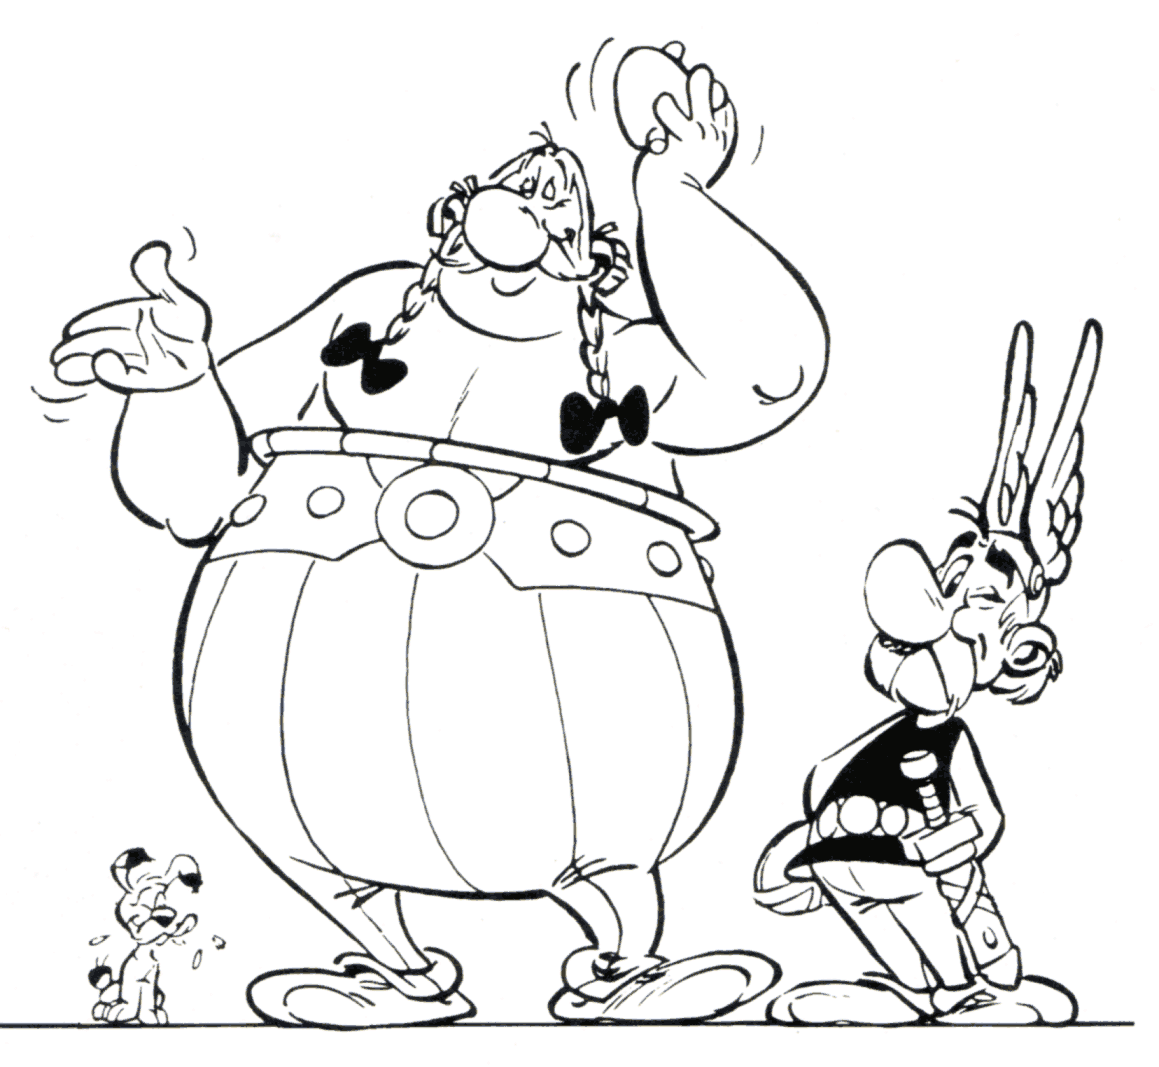 dibujo-para-colorear-asterix-y-obelix-imagen-animada-0005